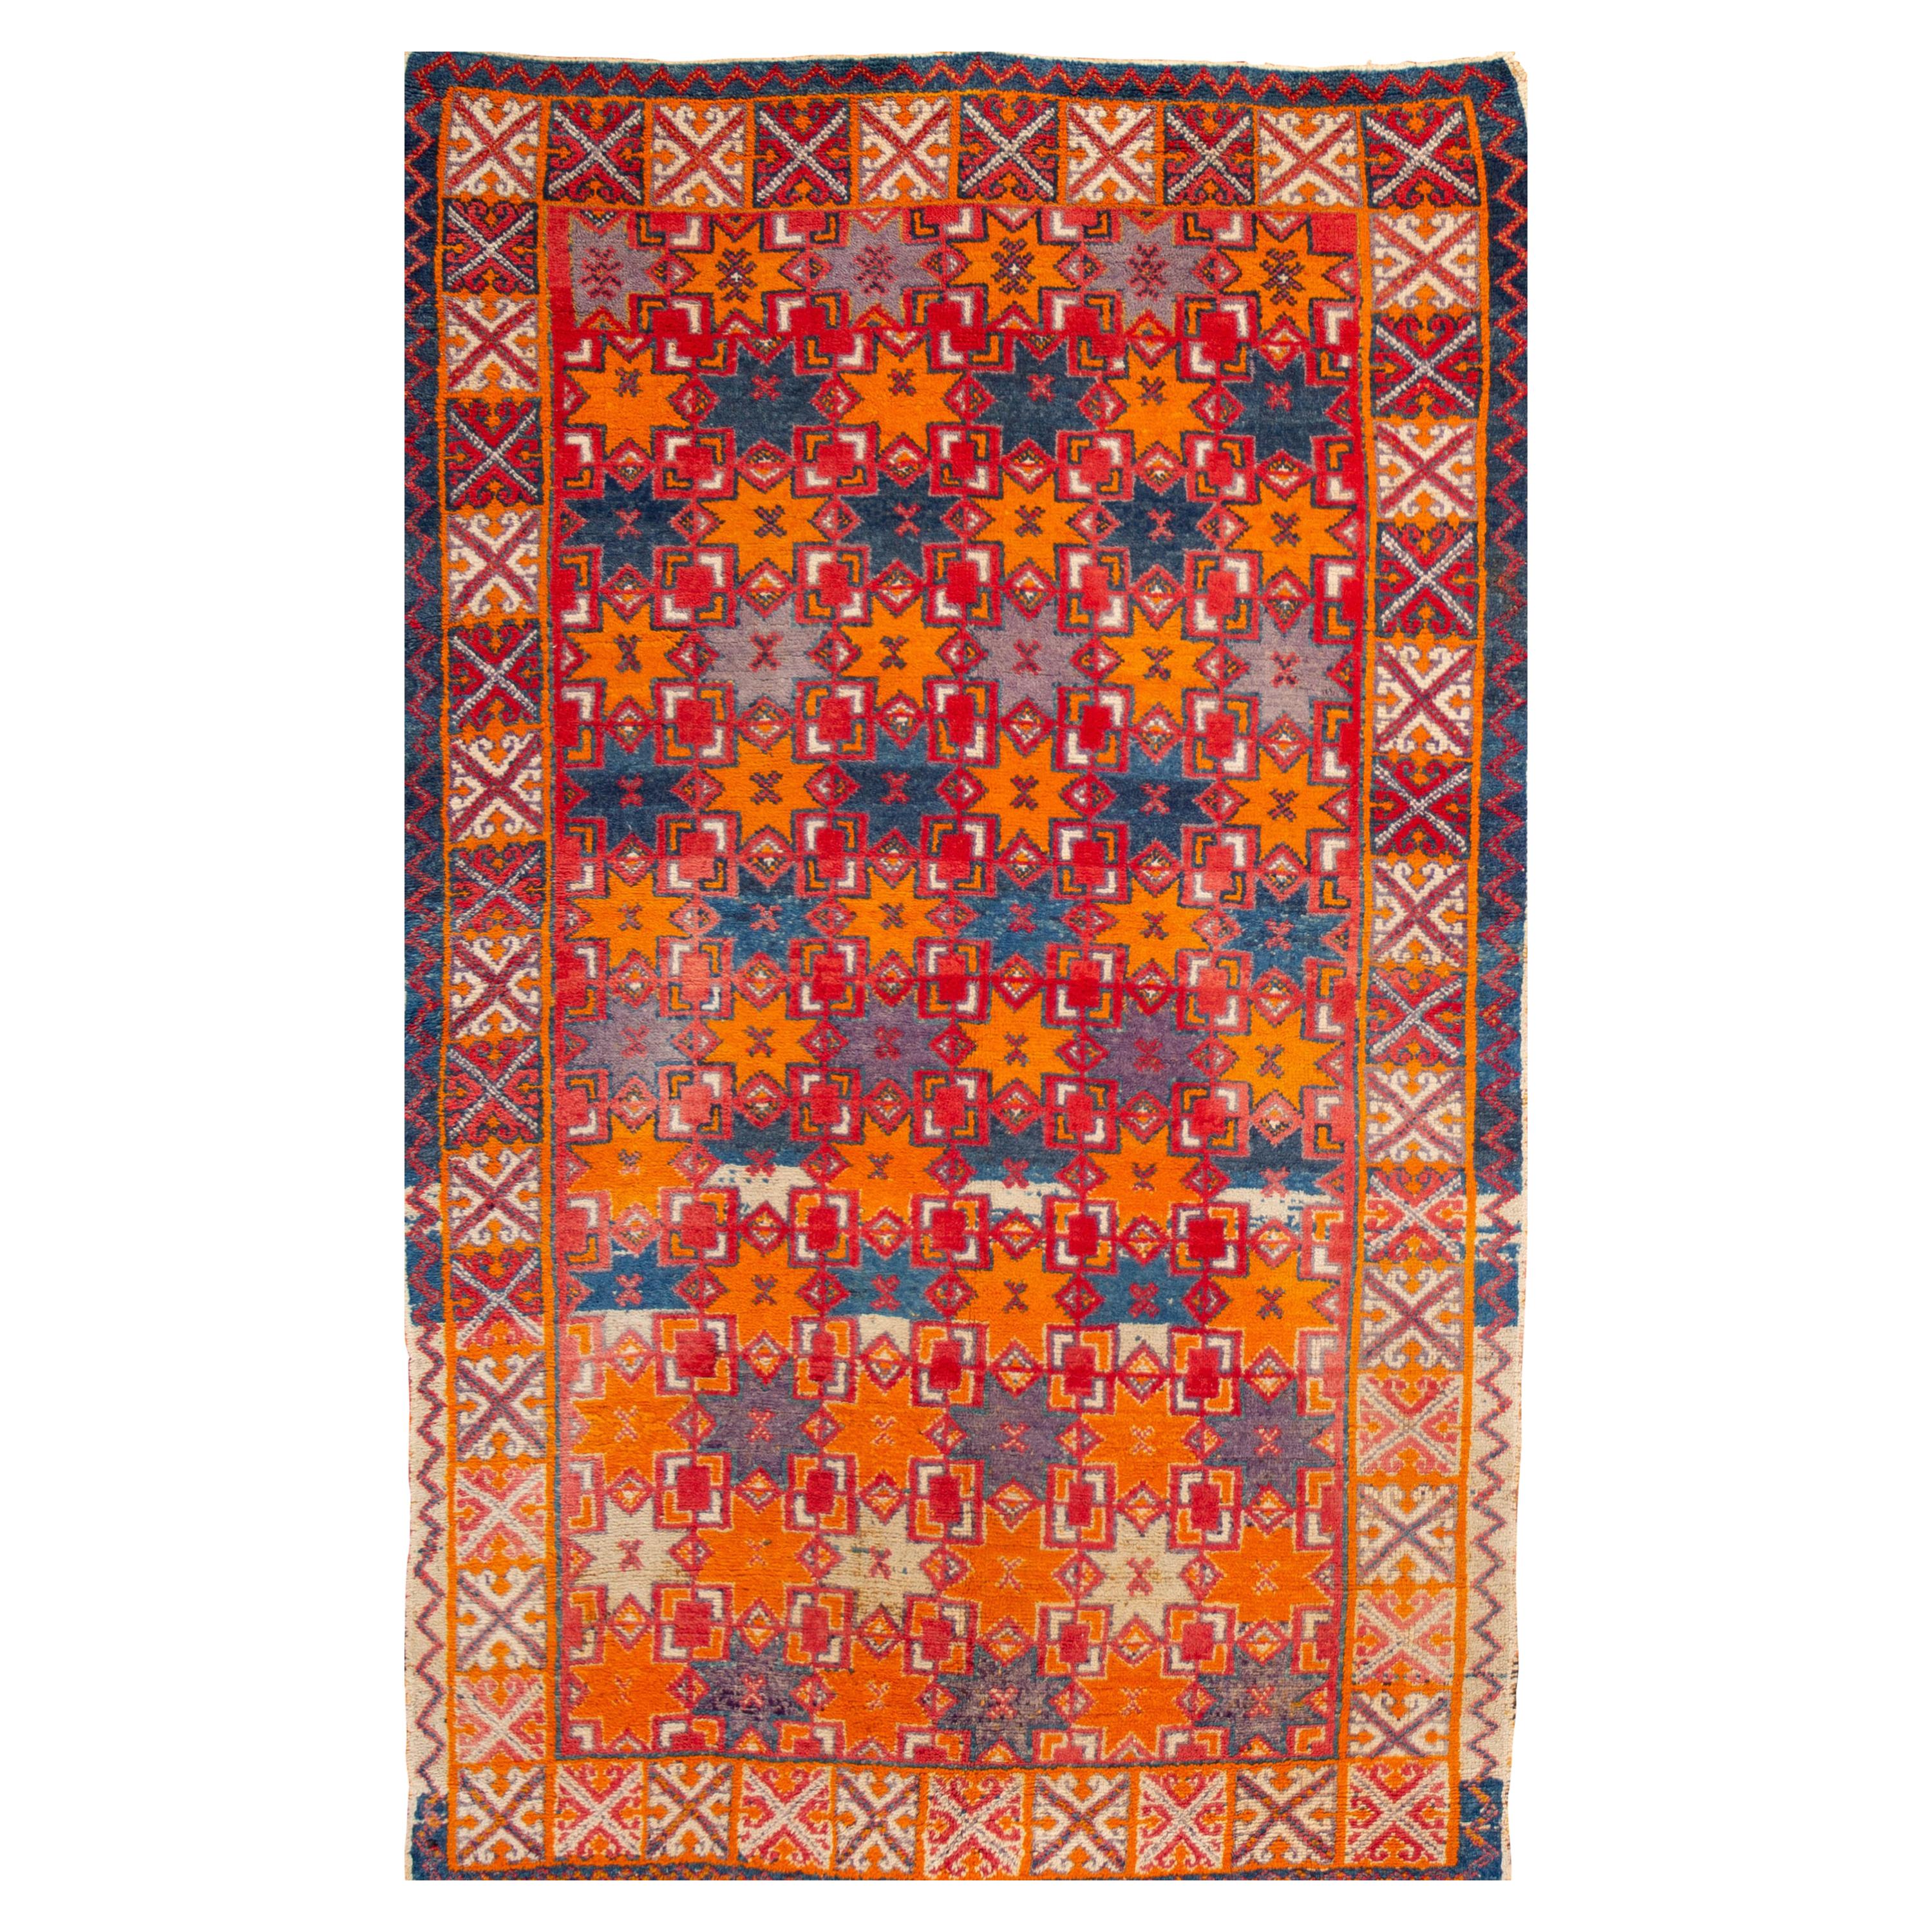 Marokkanischer Vintage-Teppich aus der Mitte des 20